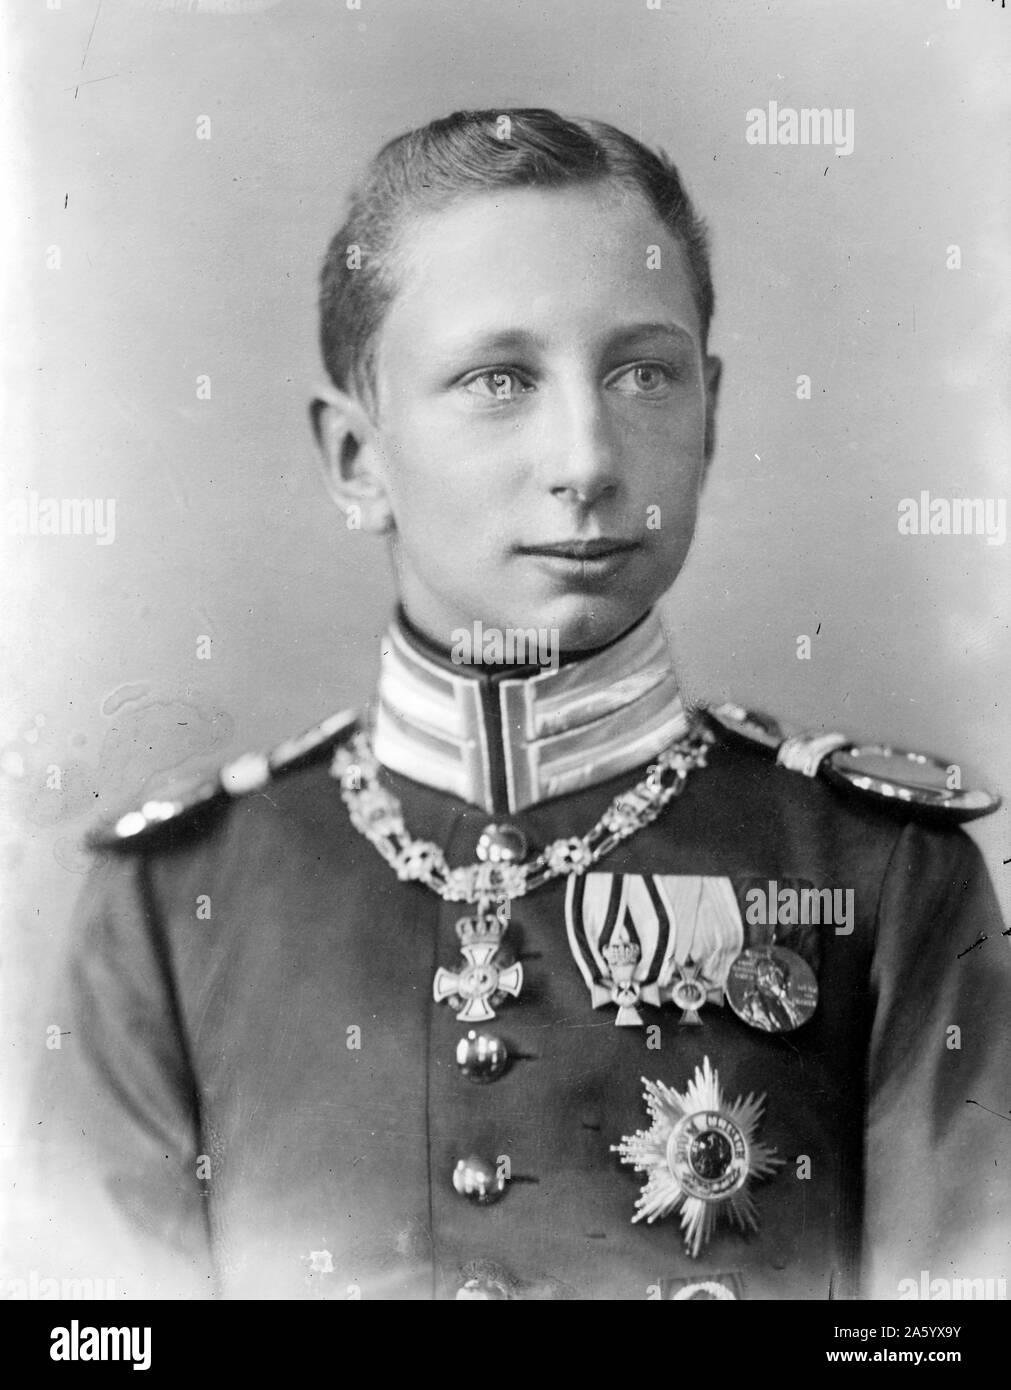 Fotografisches Porträt von Prinz Joachim von Preußen (1890-1920) Prinz Joachim Franz Humbert von Preußen war der jüngste Sohn von Wilhelm II., deutscher Kaiser, von seiner ersten Frau Augusta Victoria von Schleswig-Holstein. Datiert 1916 Stockfoto